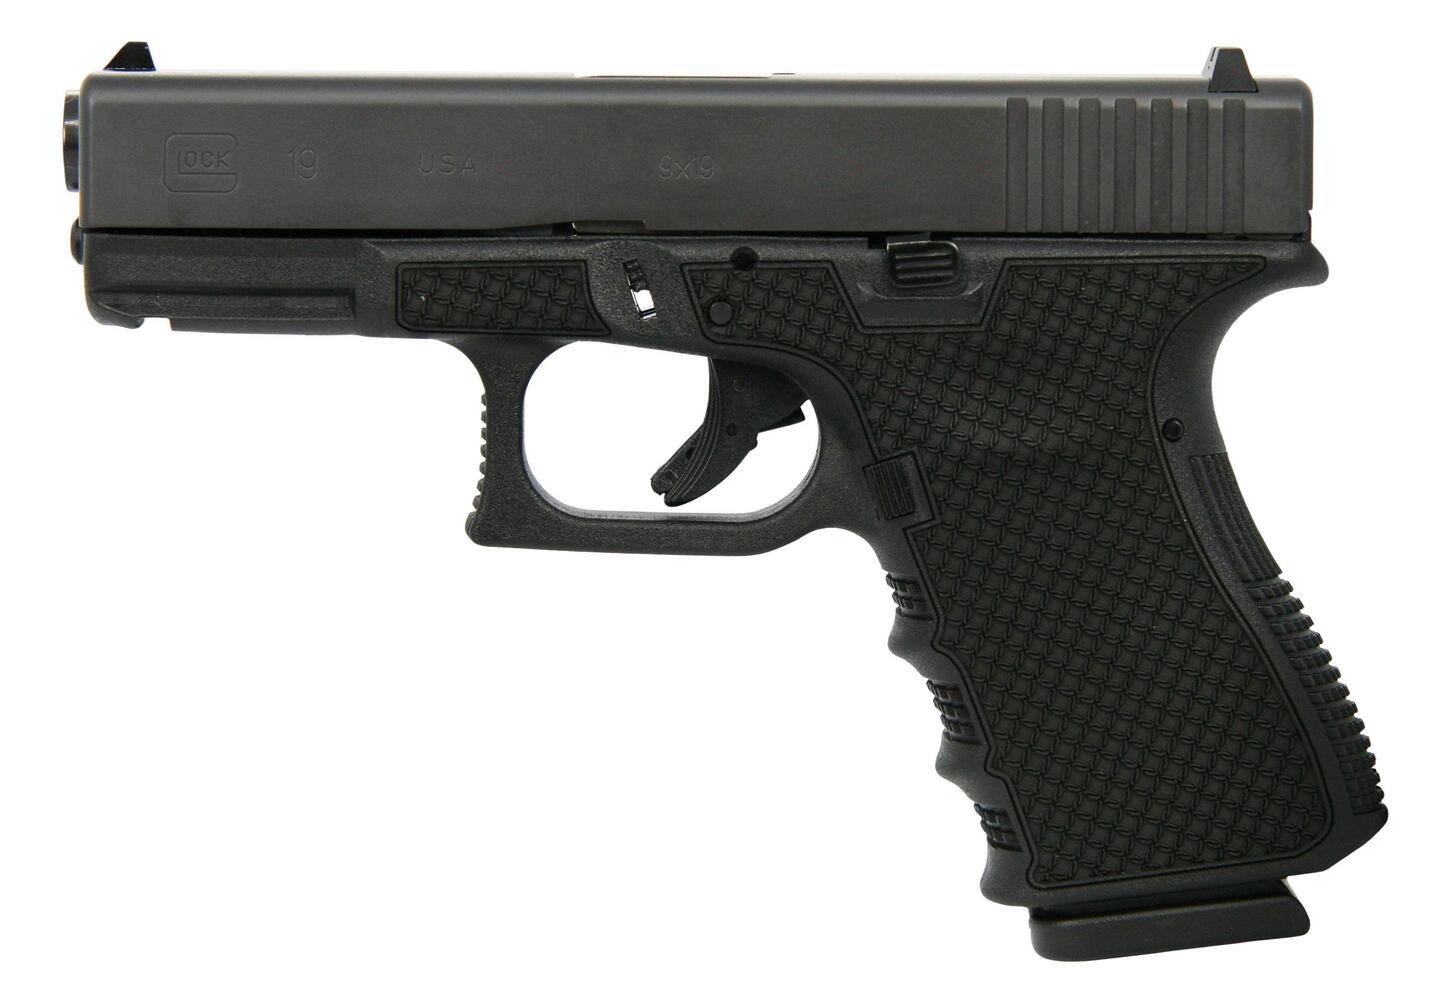   Glock 19 Gen 3 Handgun 9mm Luger 15rd Magazines 4.02